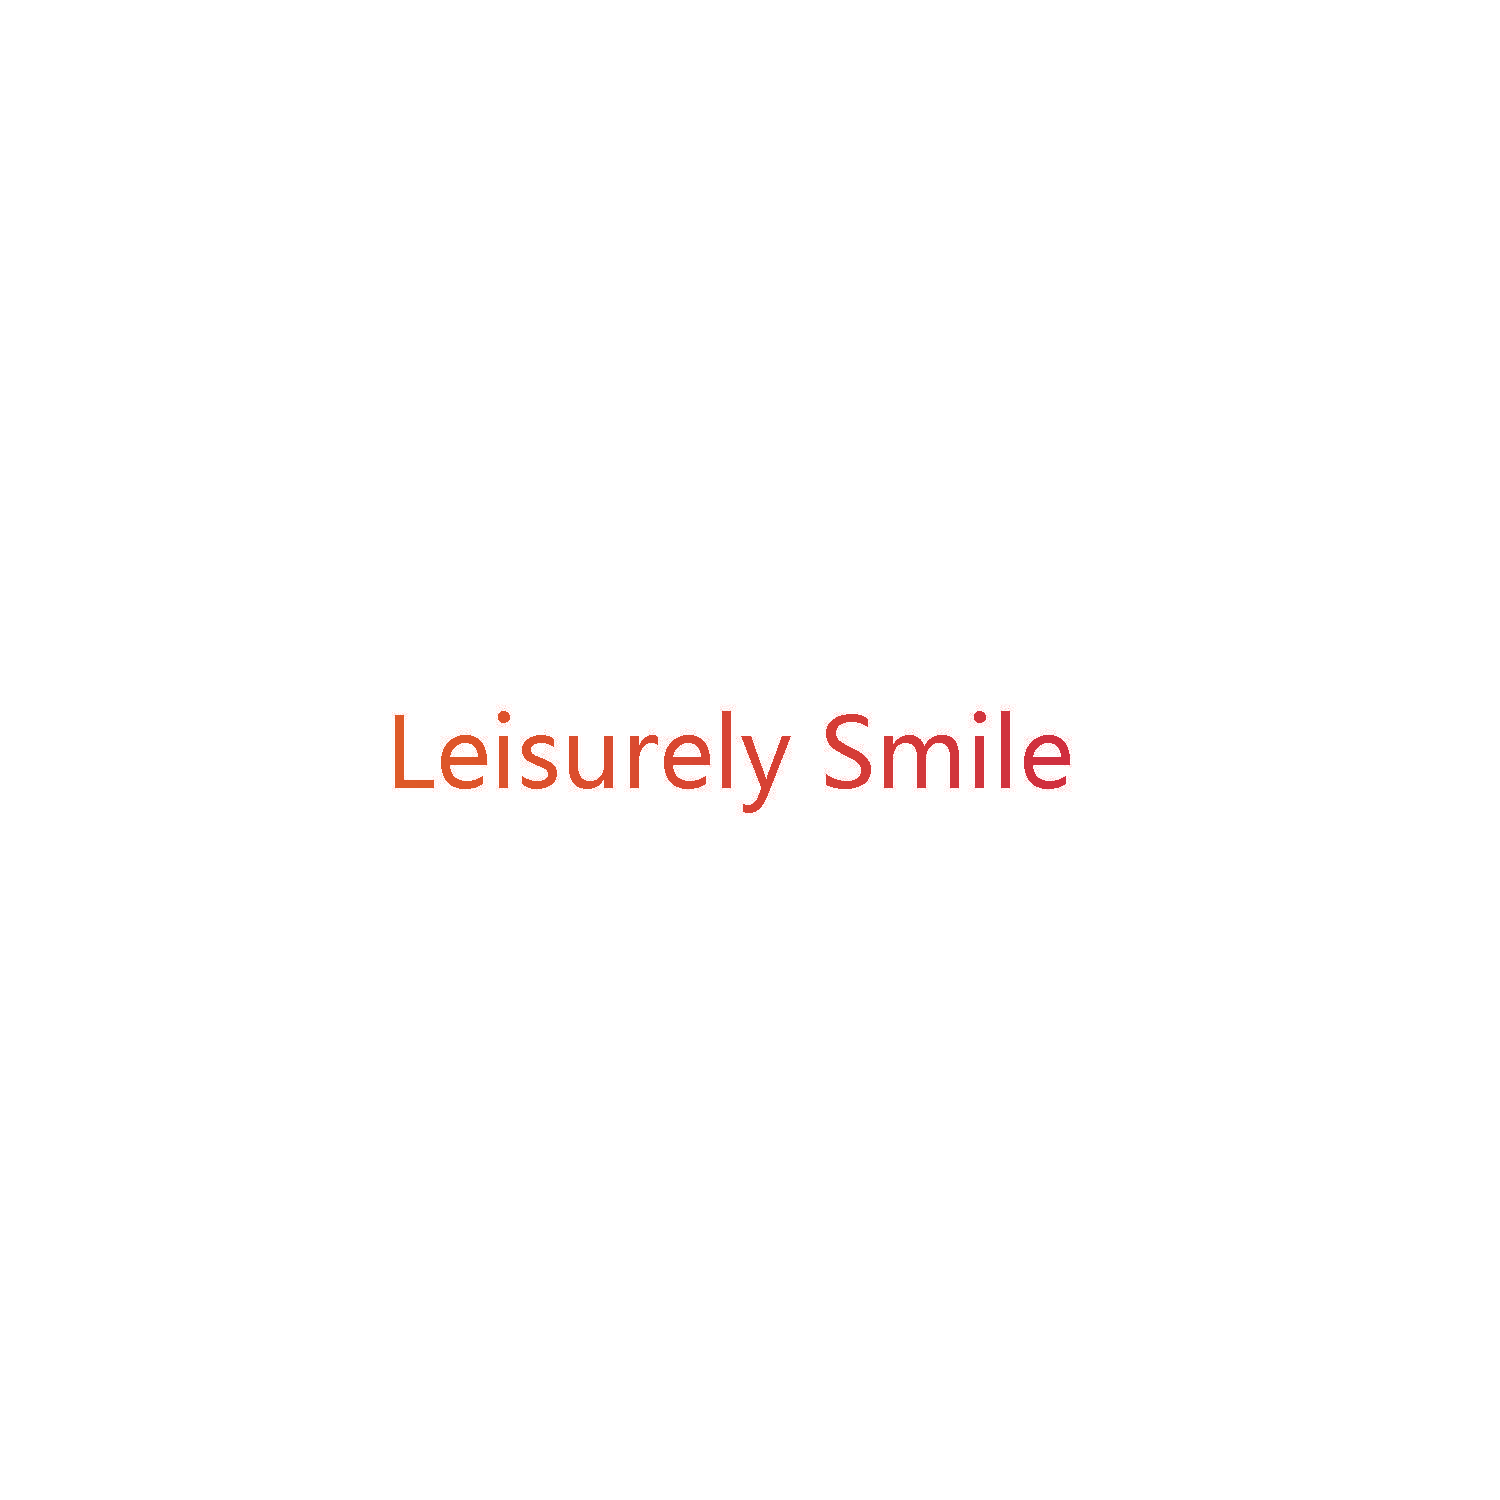 Leisurely Smile